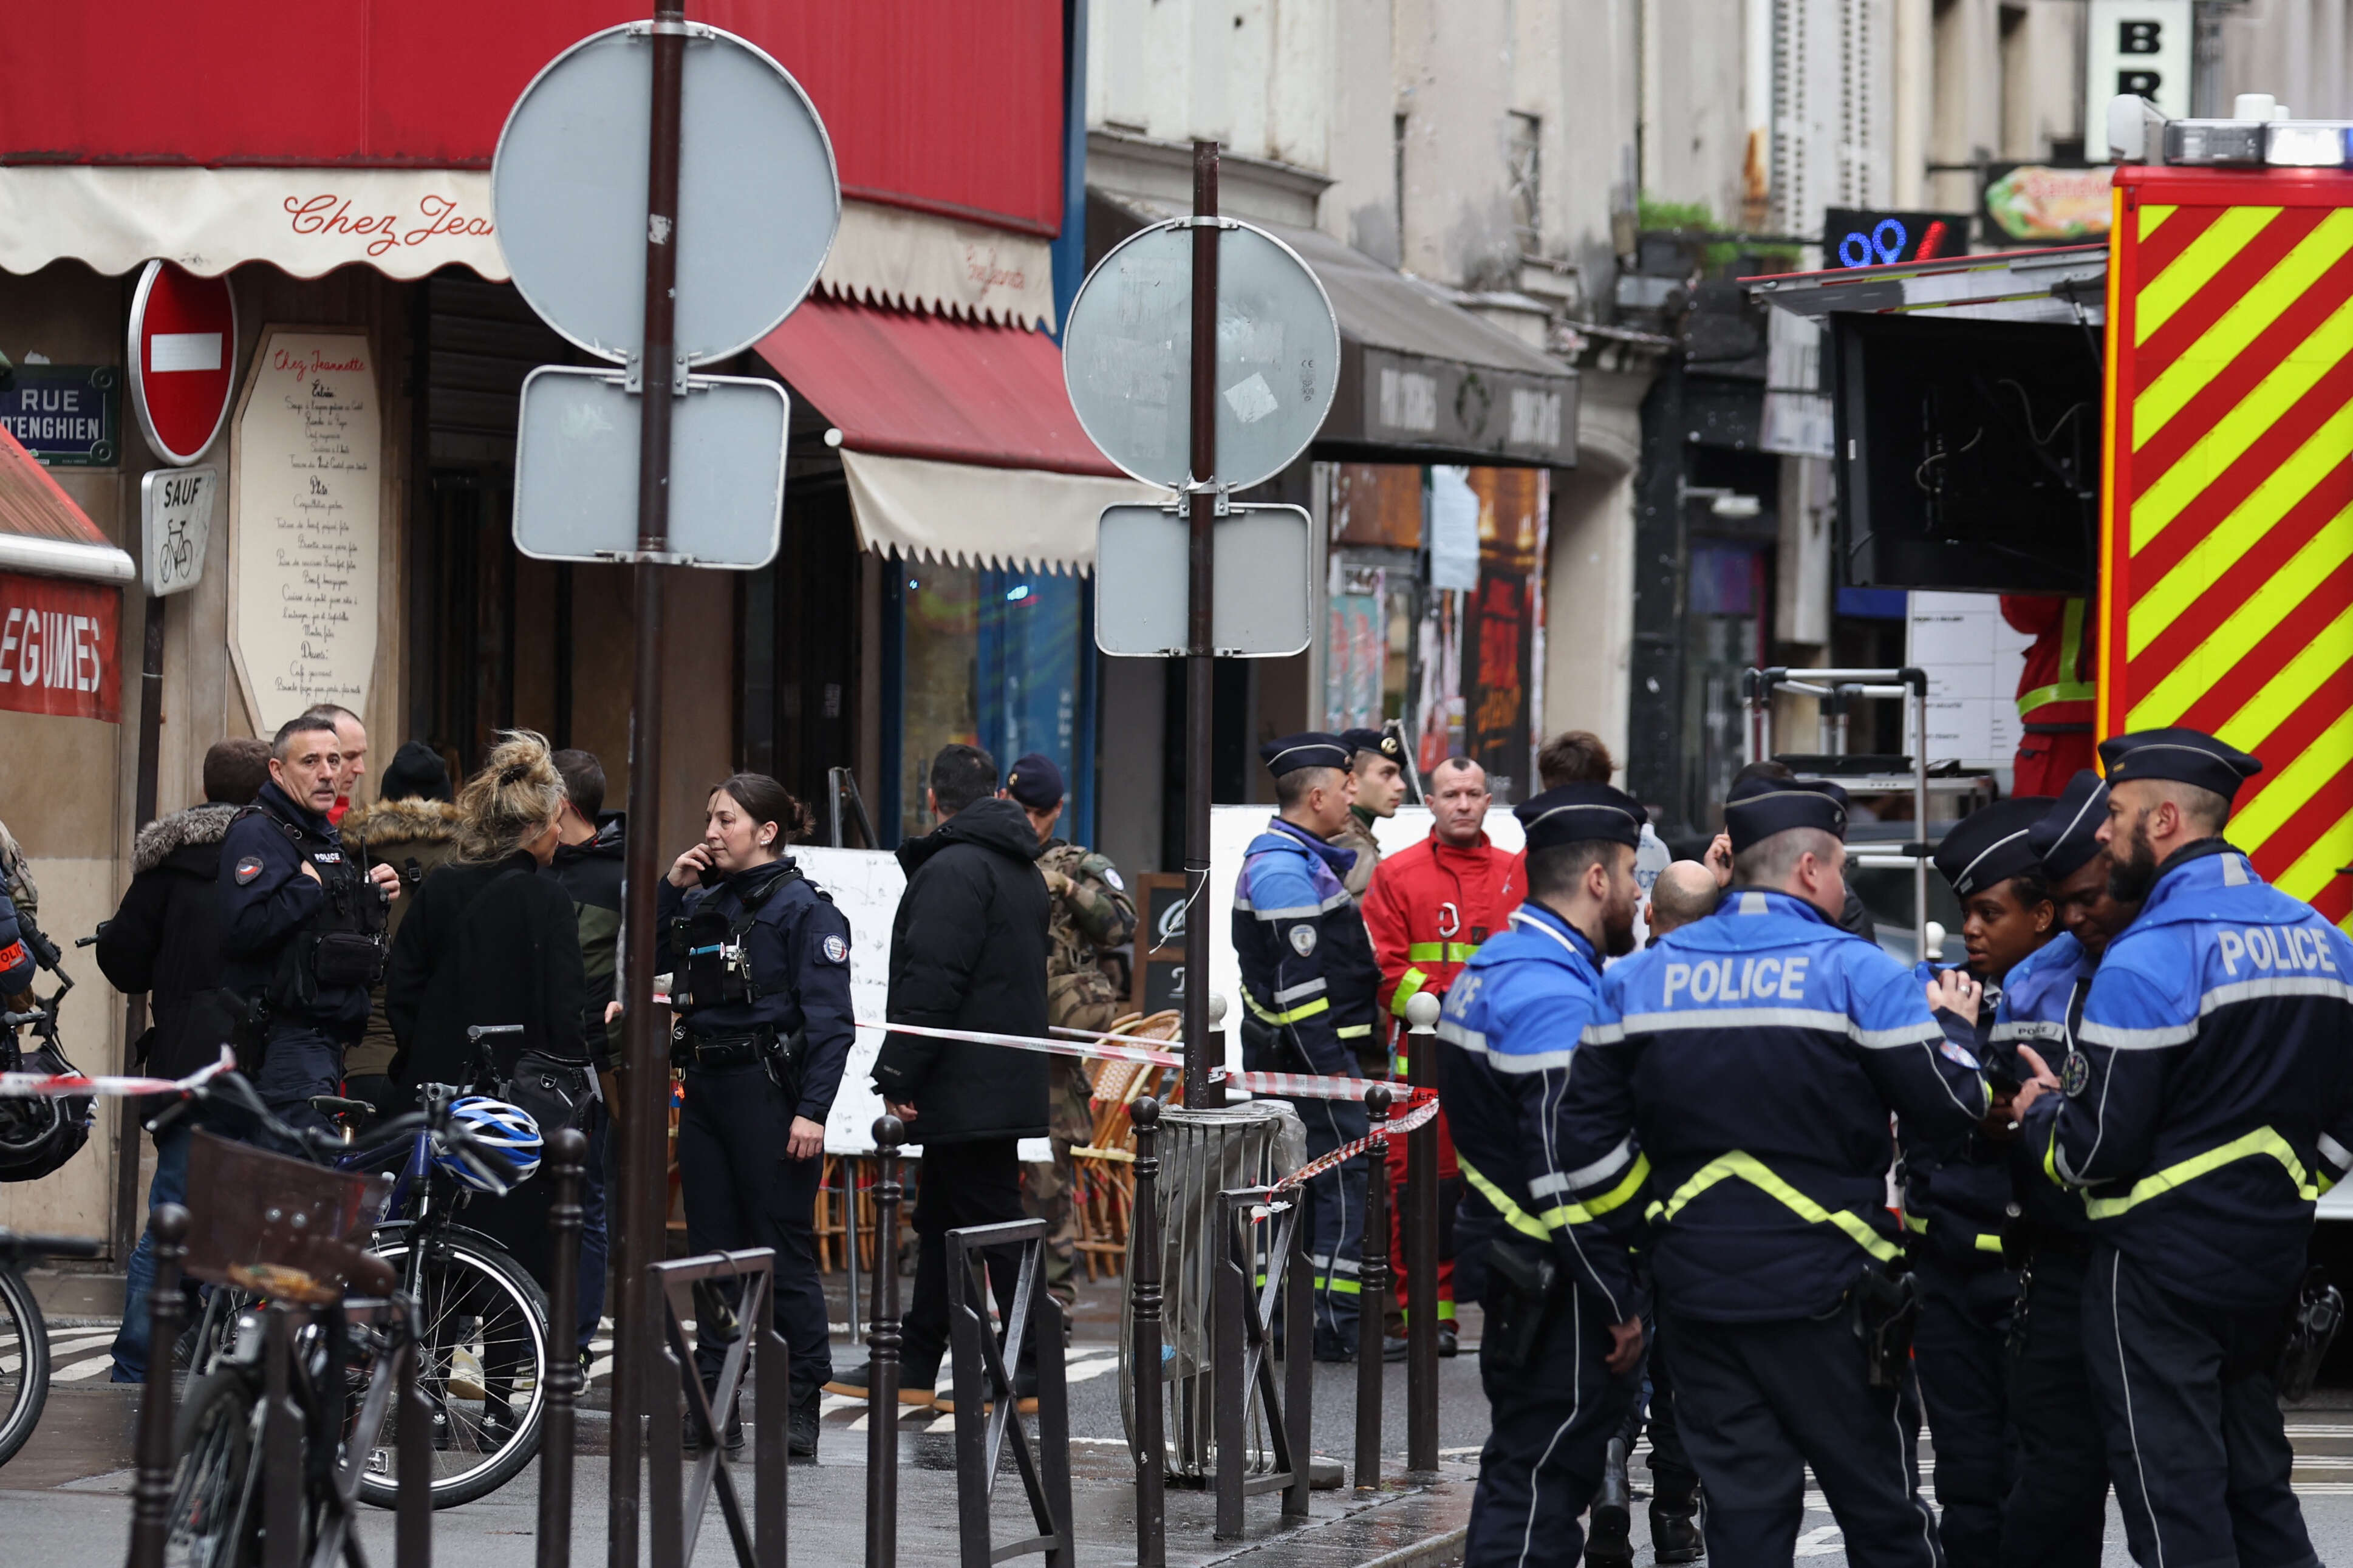 A proximité de la rue d'Enghien, où plusieurs personnes ont été tuées à l’arme à feu par un homme, qui a été interpellé.